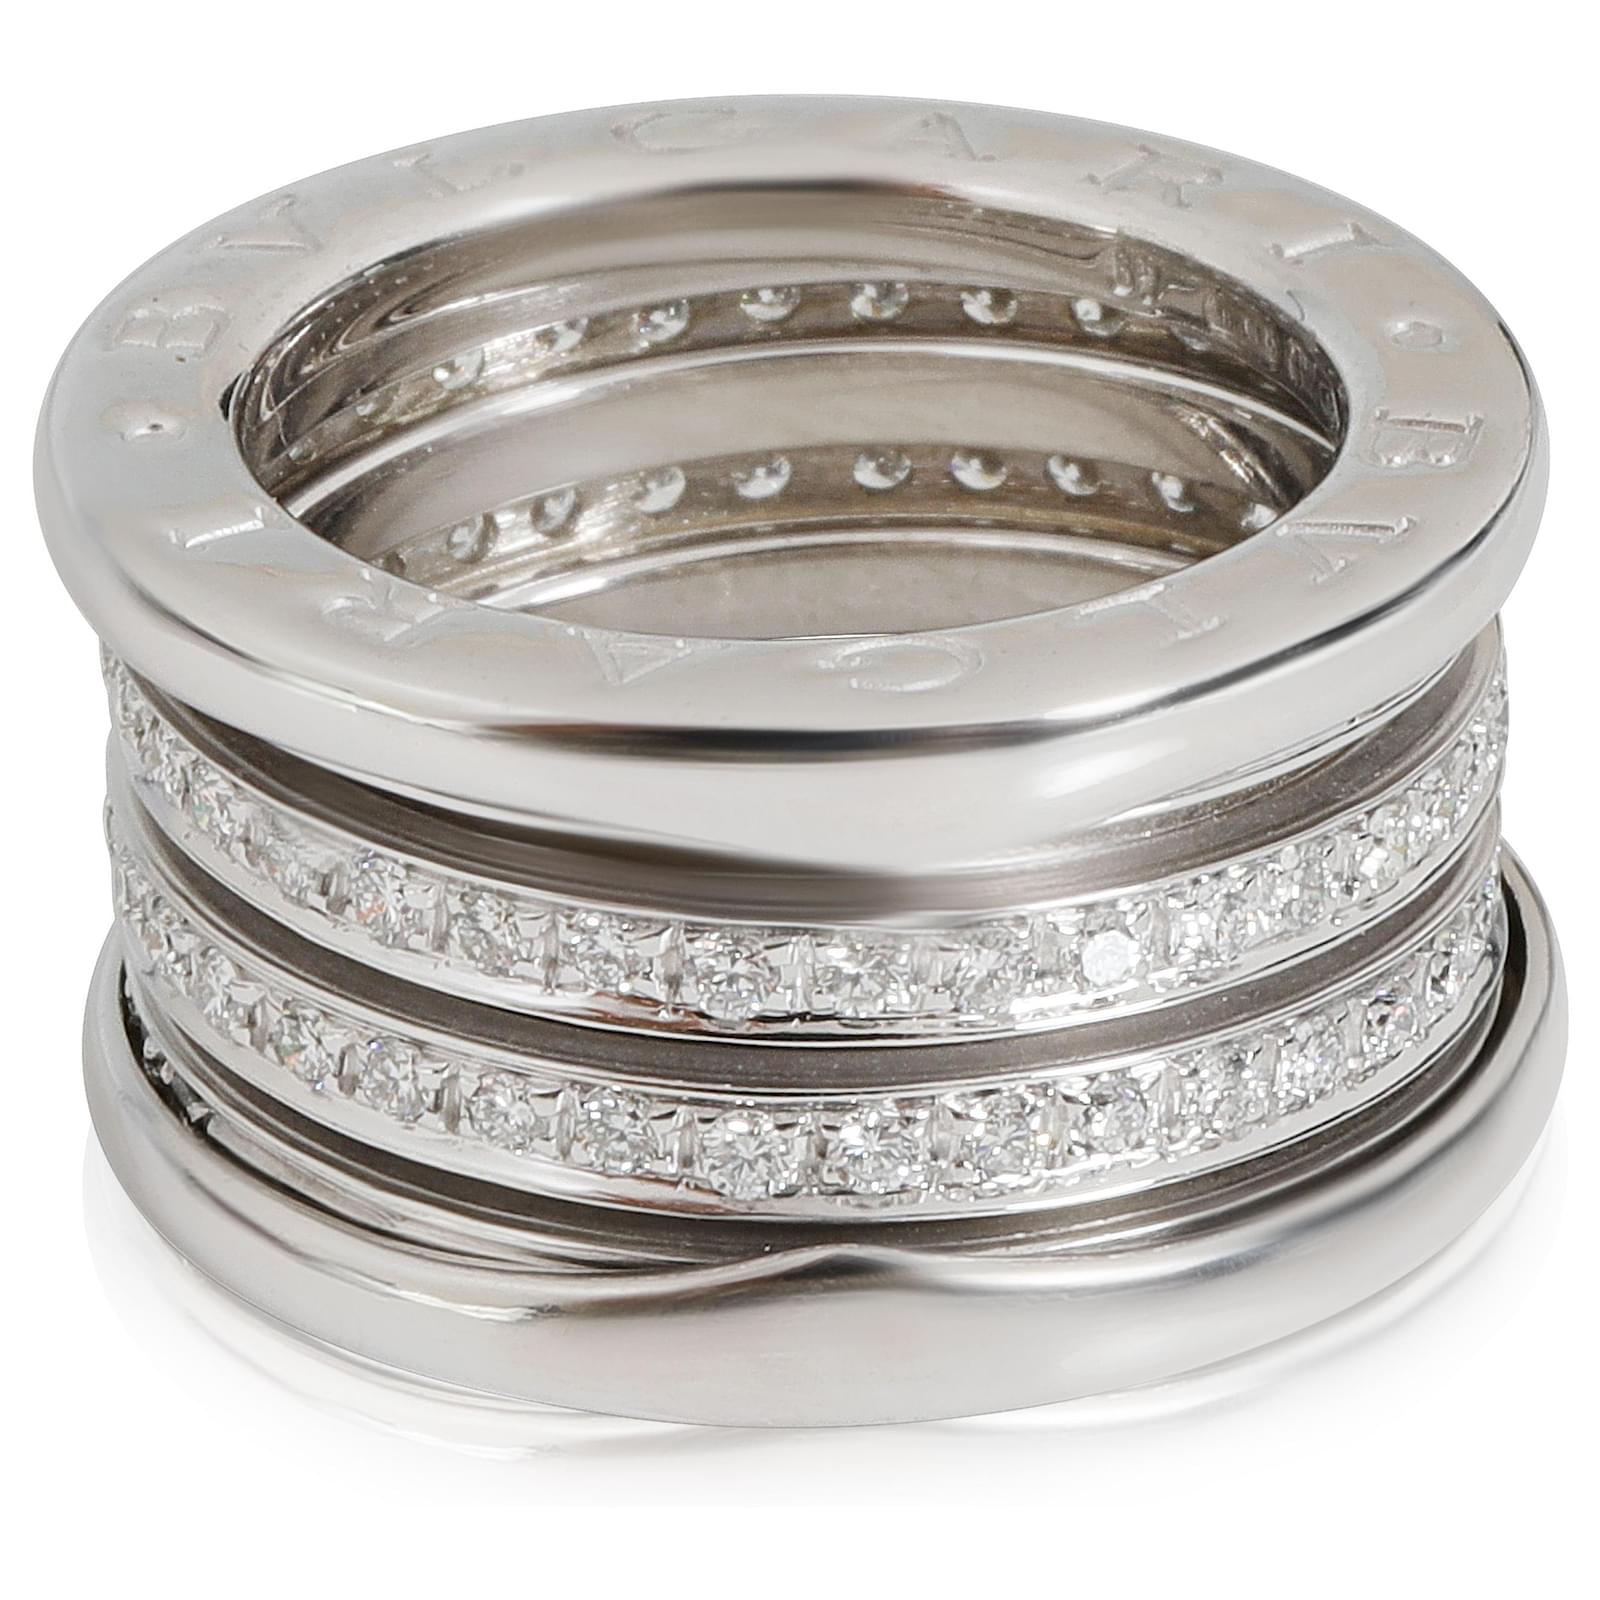 Bulgari Bvlgari B.Zero1 Three-Band Diamond Ring in 18K white gold